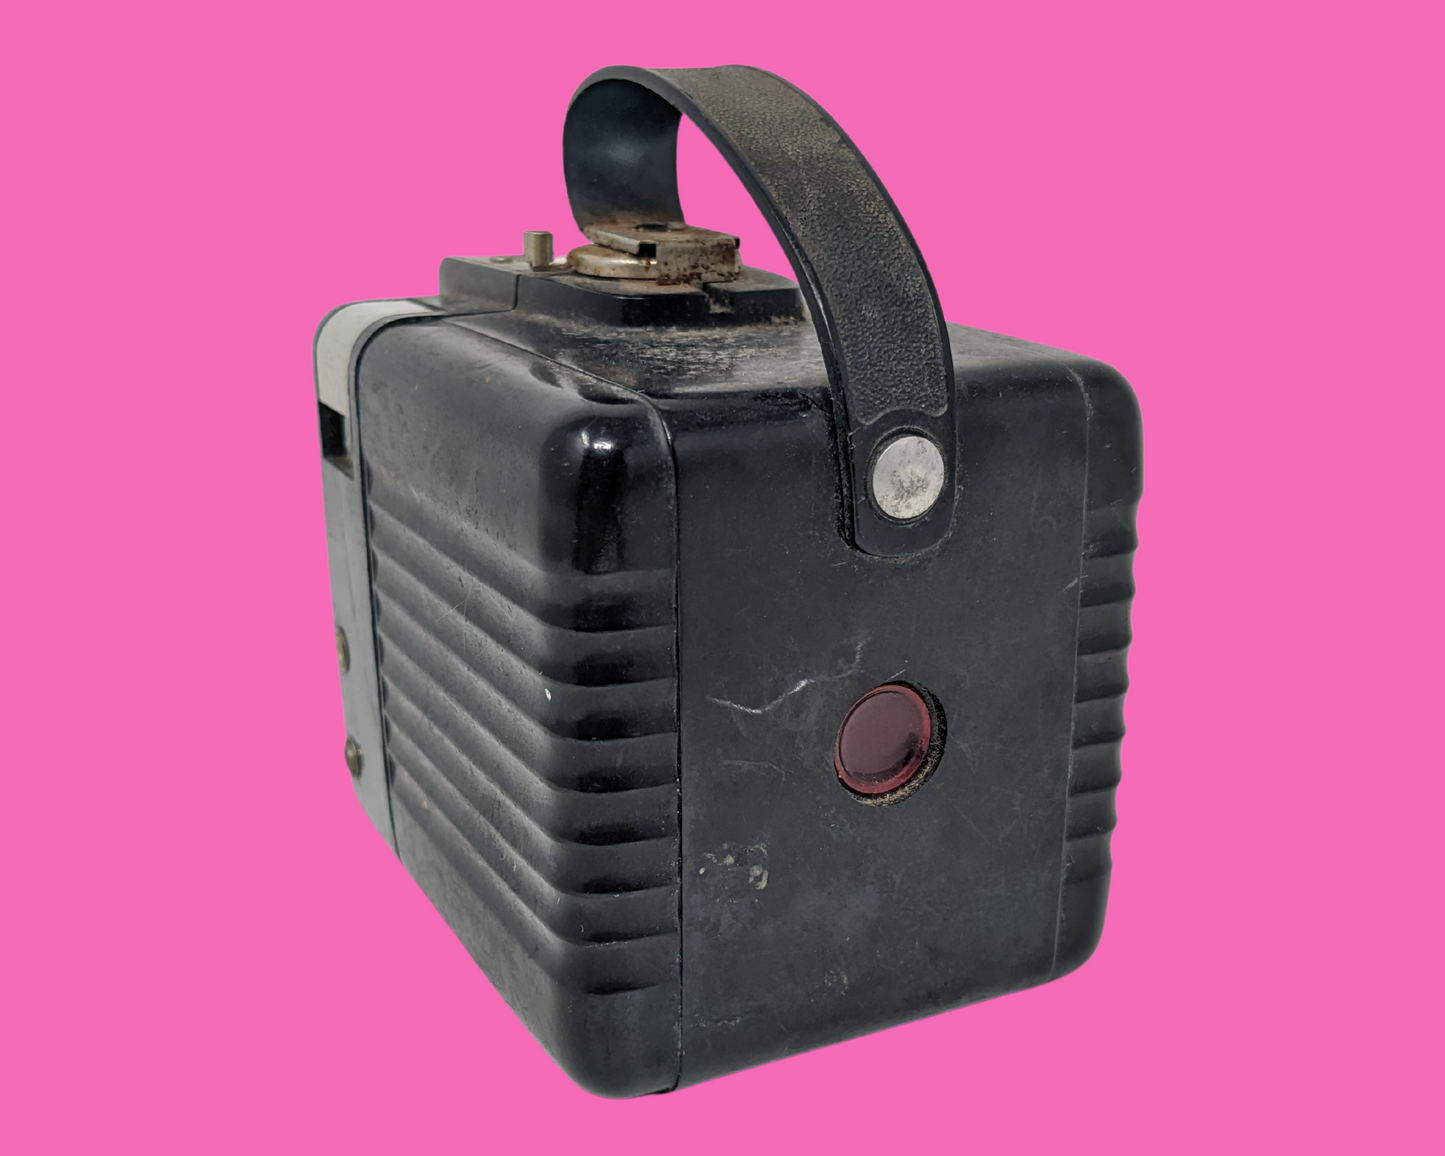 Modèle de flash d'appareil photo Brownie Kodak Hawkeye vintage des années 1950